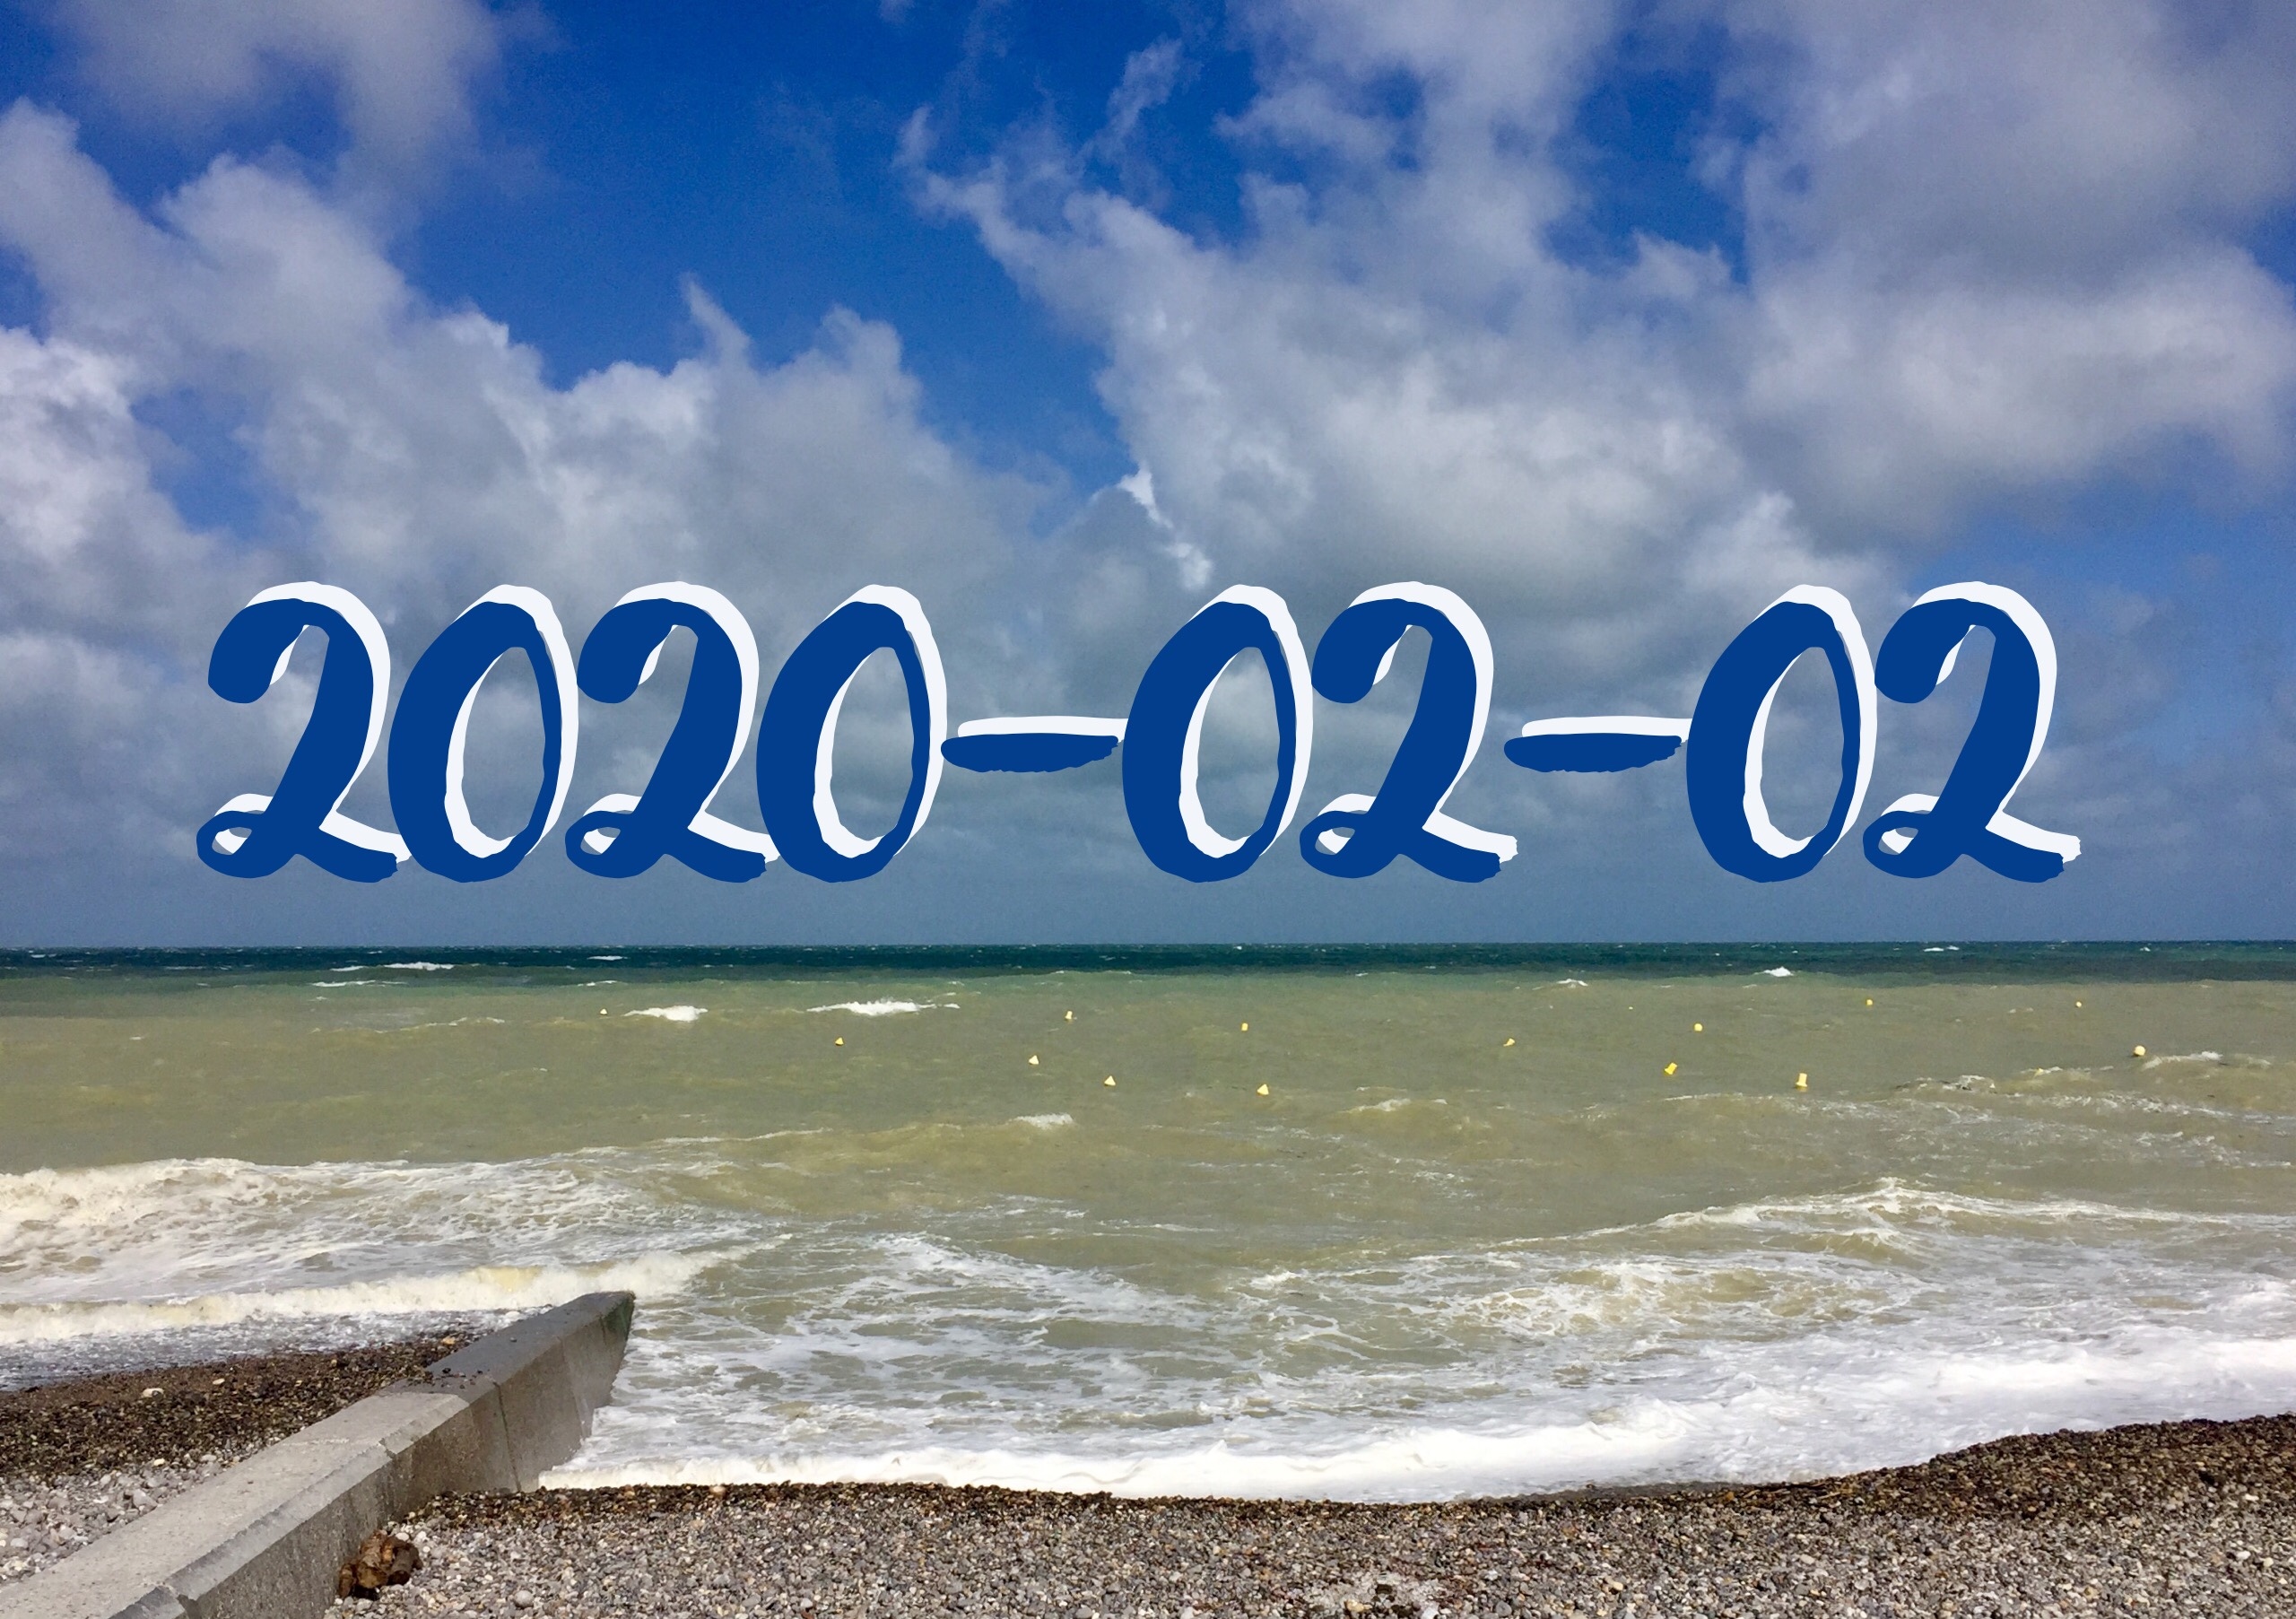 2020-02-02